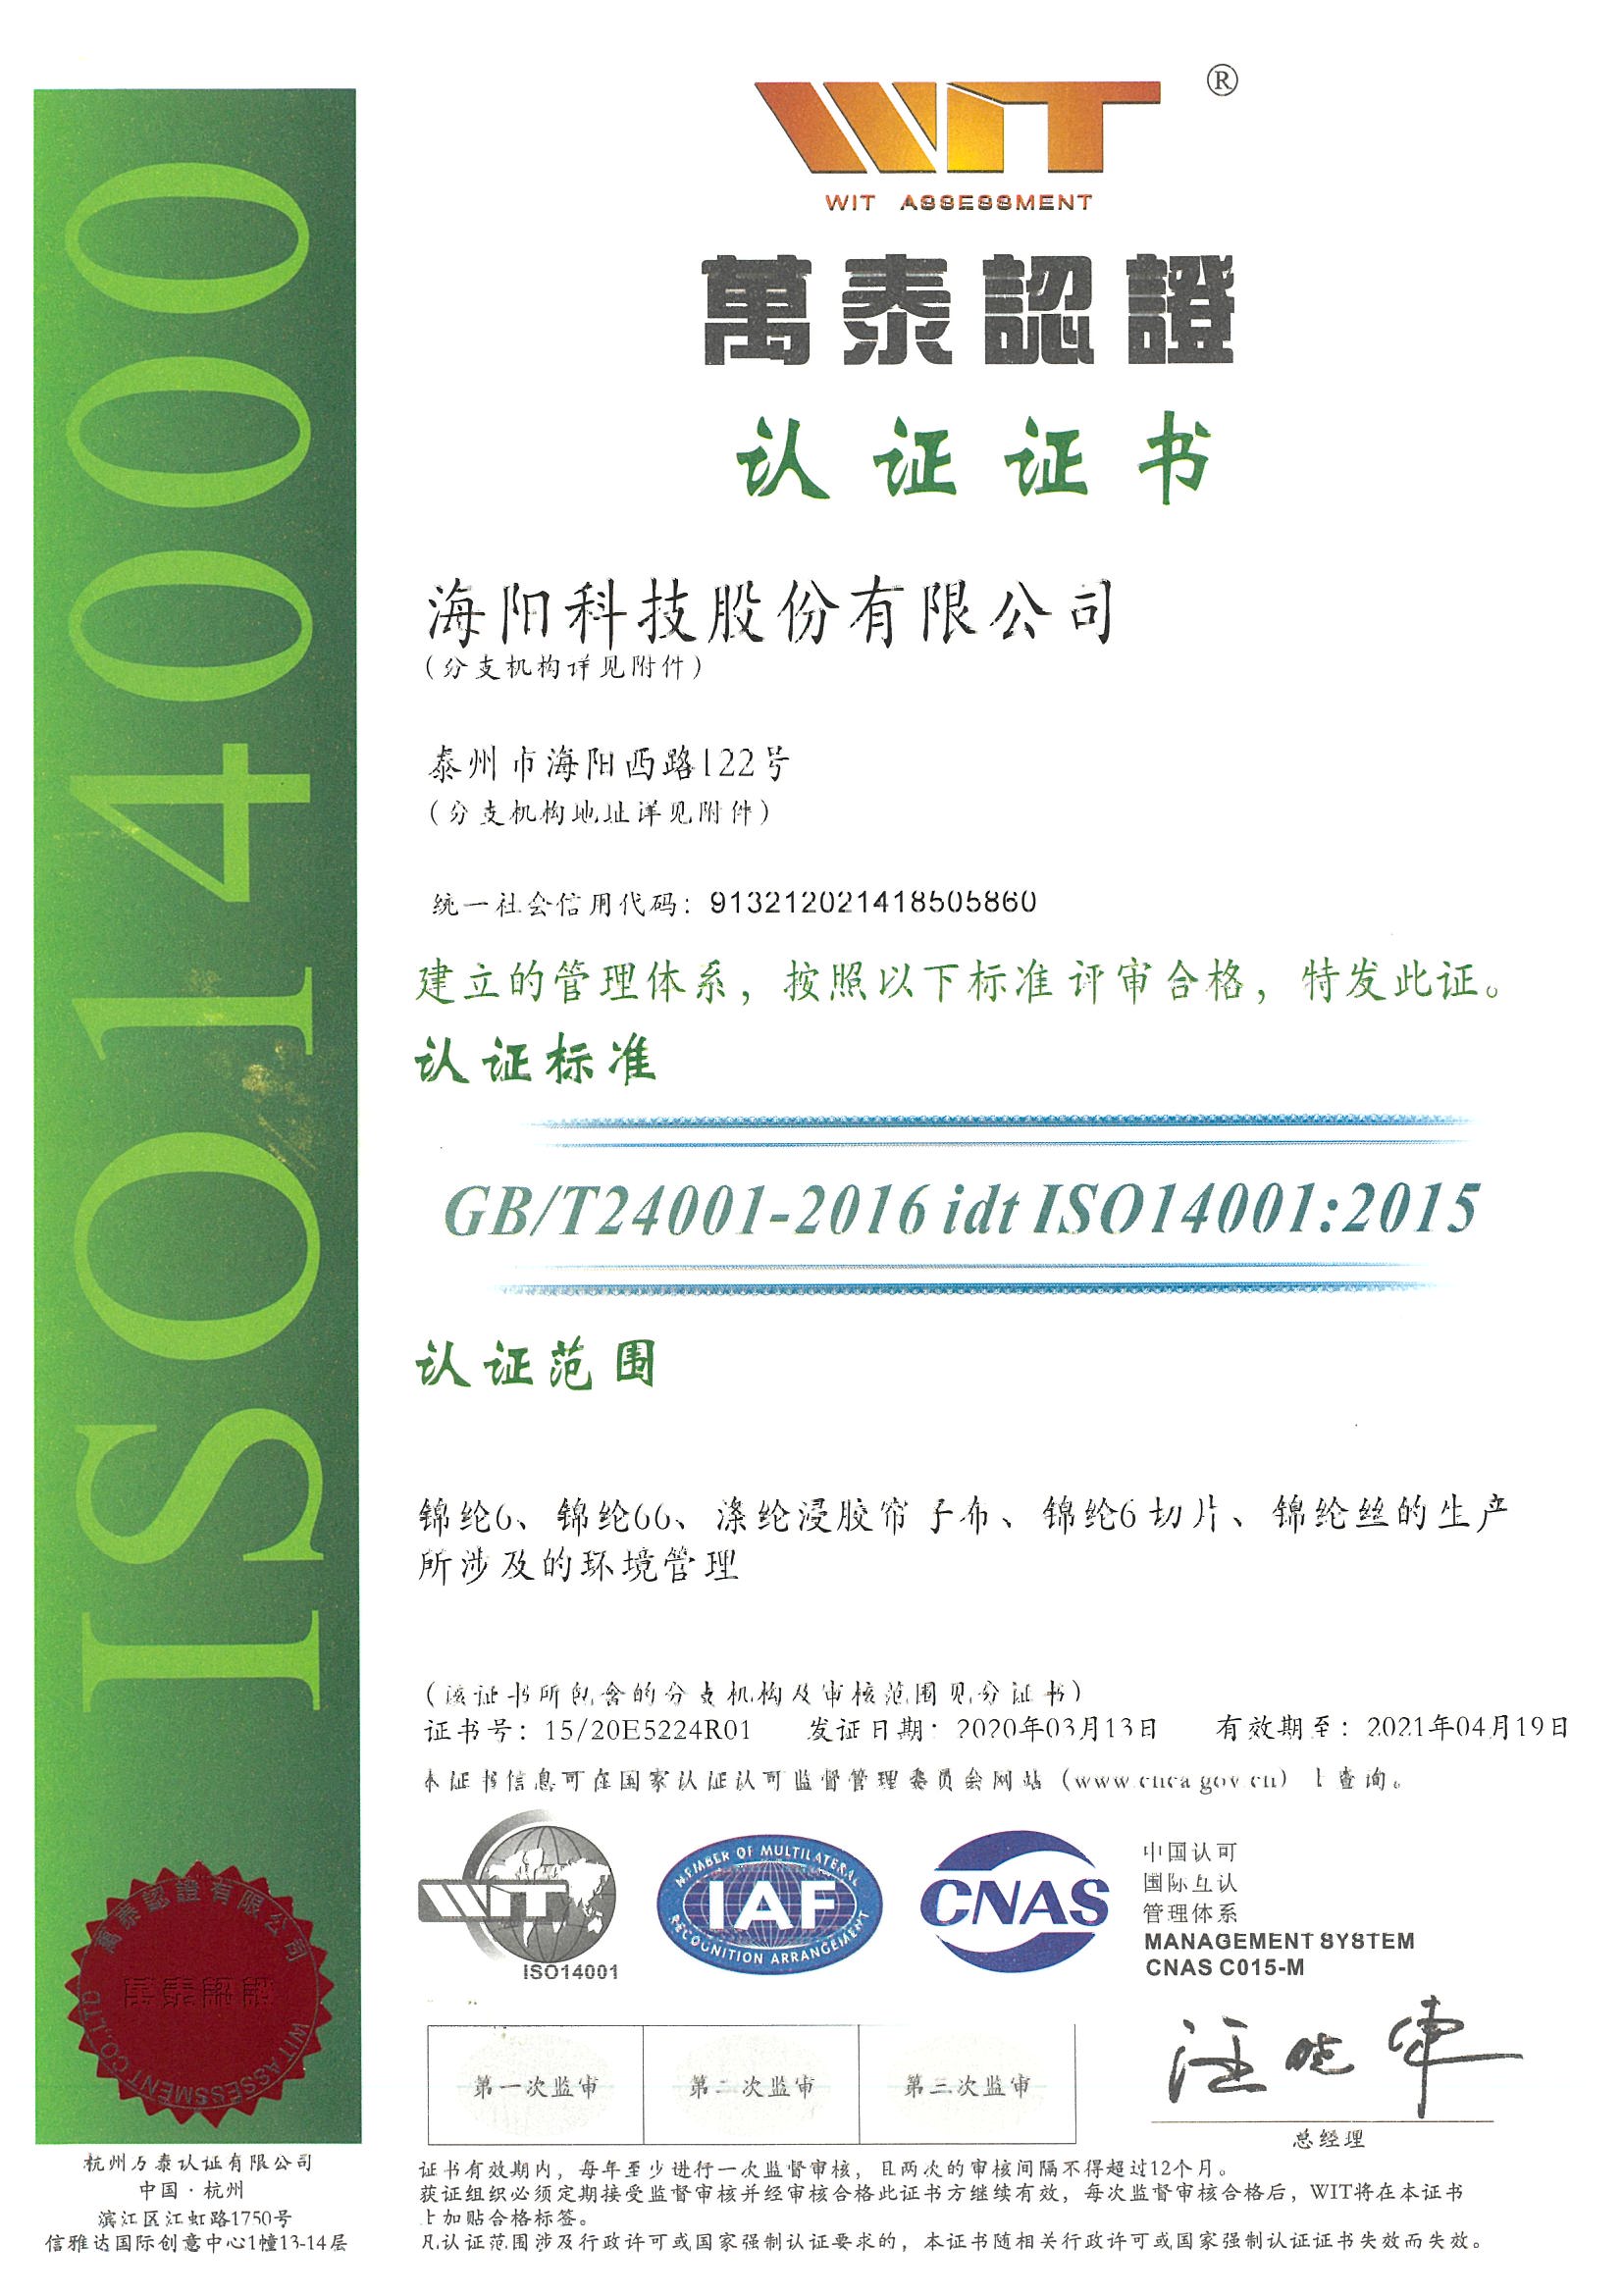 环境管理体系认证证书-秋雪荣誉